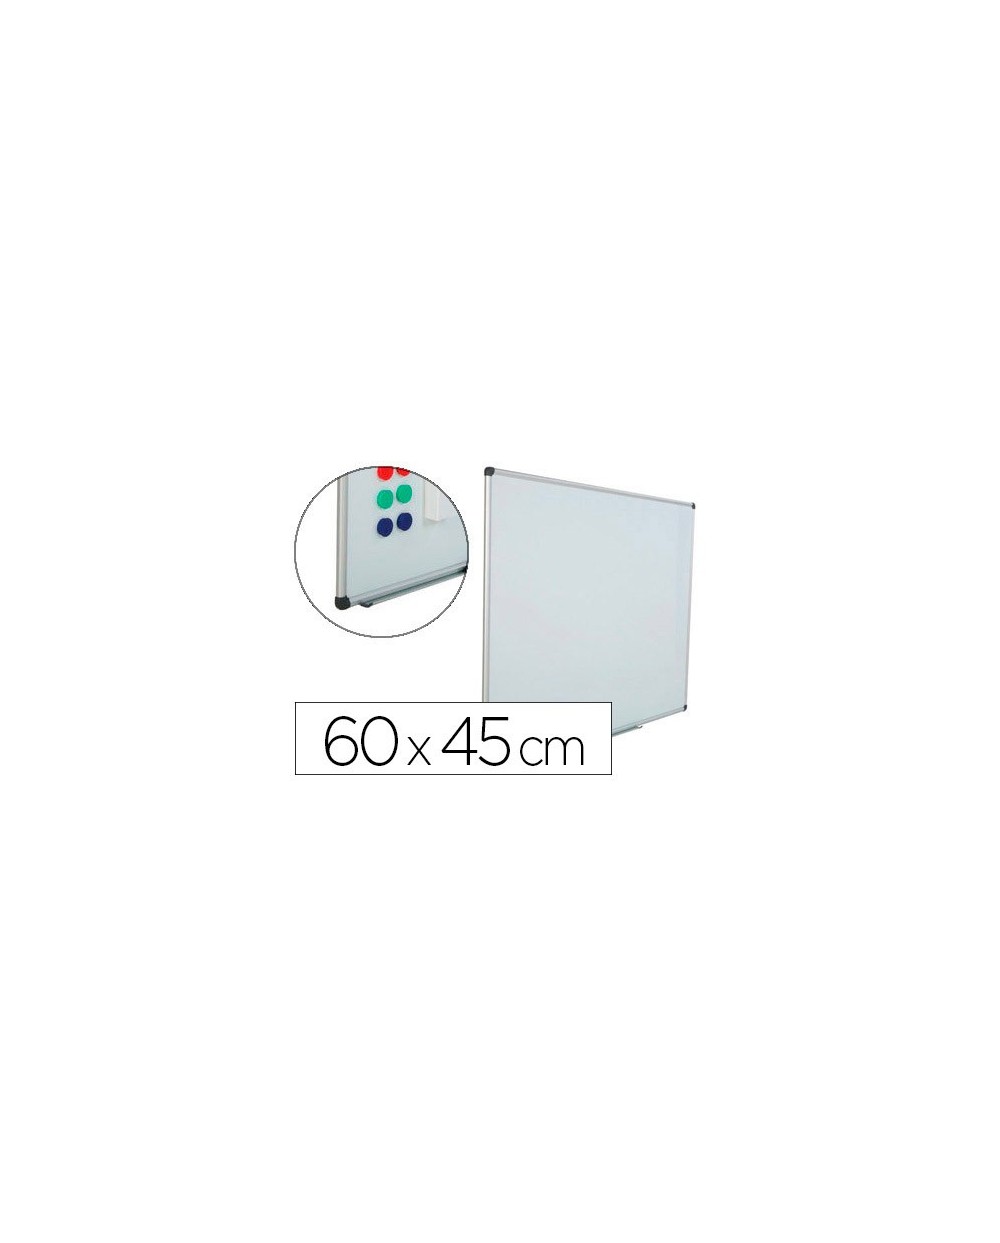 Pizarra blanca rocada acero vitrificado magnetico marco aluminio y cantoneras pvc 60x45 cm incluye bandeja para